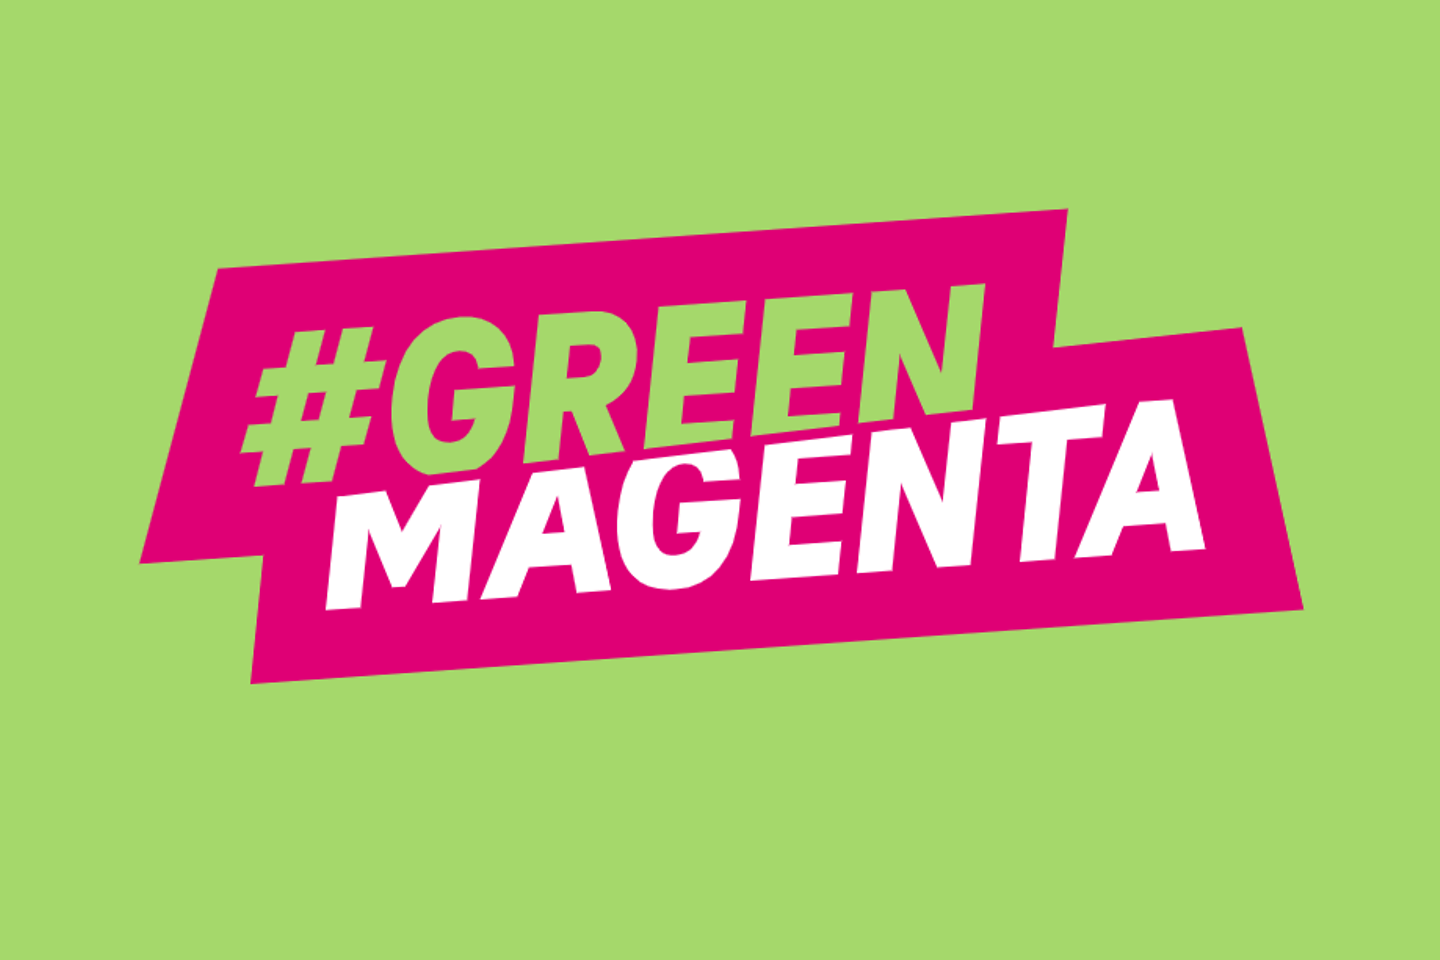 Logotipo de #Green Magenta ante un fondo verde